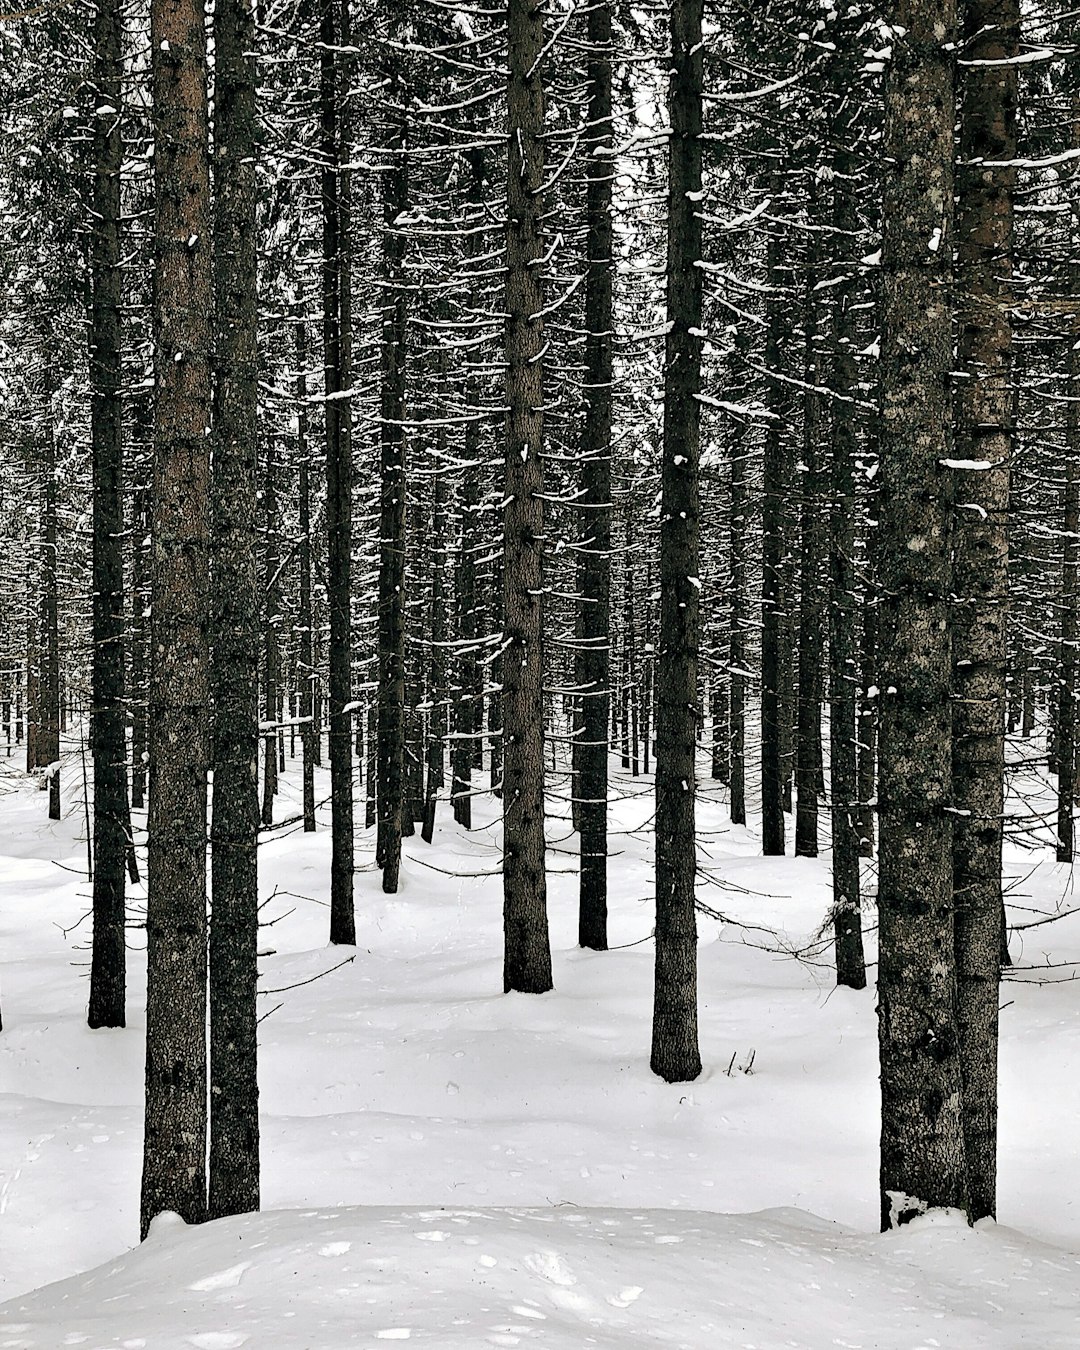 Spruce-fir forest photo spot Paneveggio - Pale di San Martino Bra